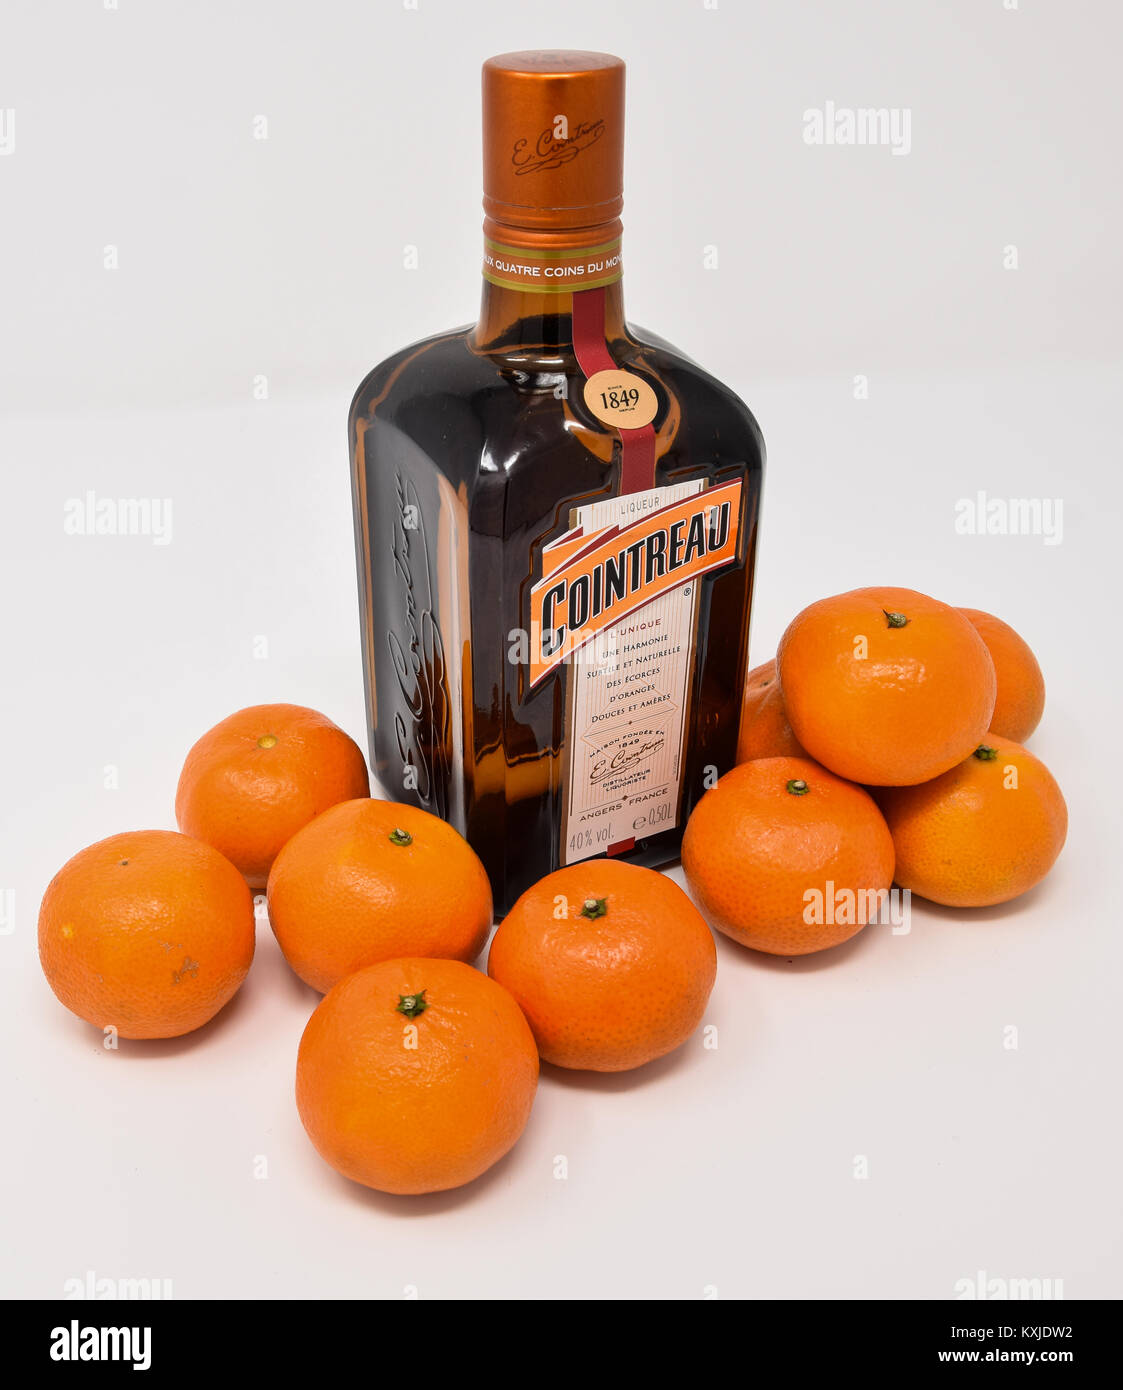 Reading, Royaume-Uni - 31 décembre 2017 : une bouteille de Cointreau, liqueur d'orange avec des oranges clémentines Banque D'Images